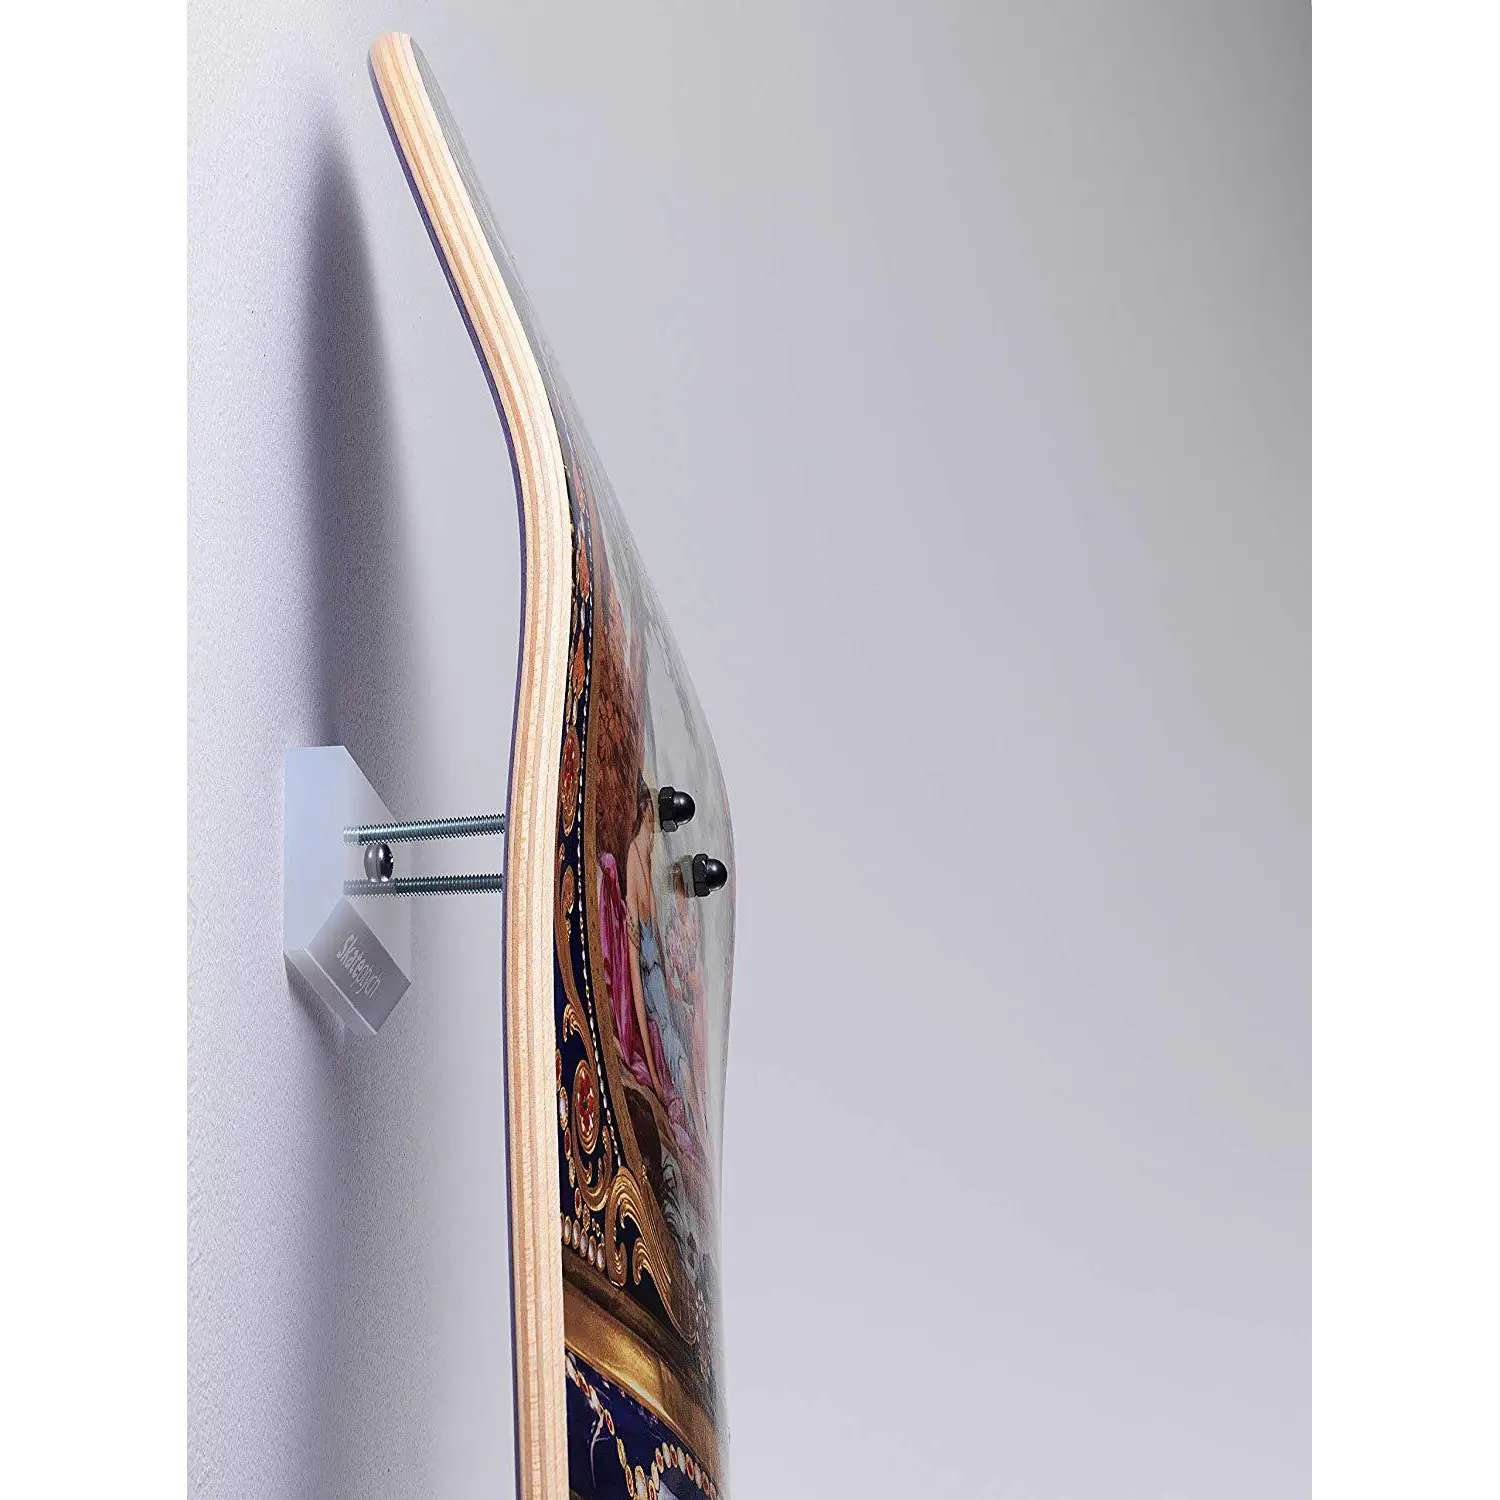 Di Skateboard montaggio a parete visualizzazione vite di fermo supporto a parete acrilico